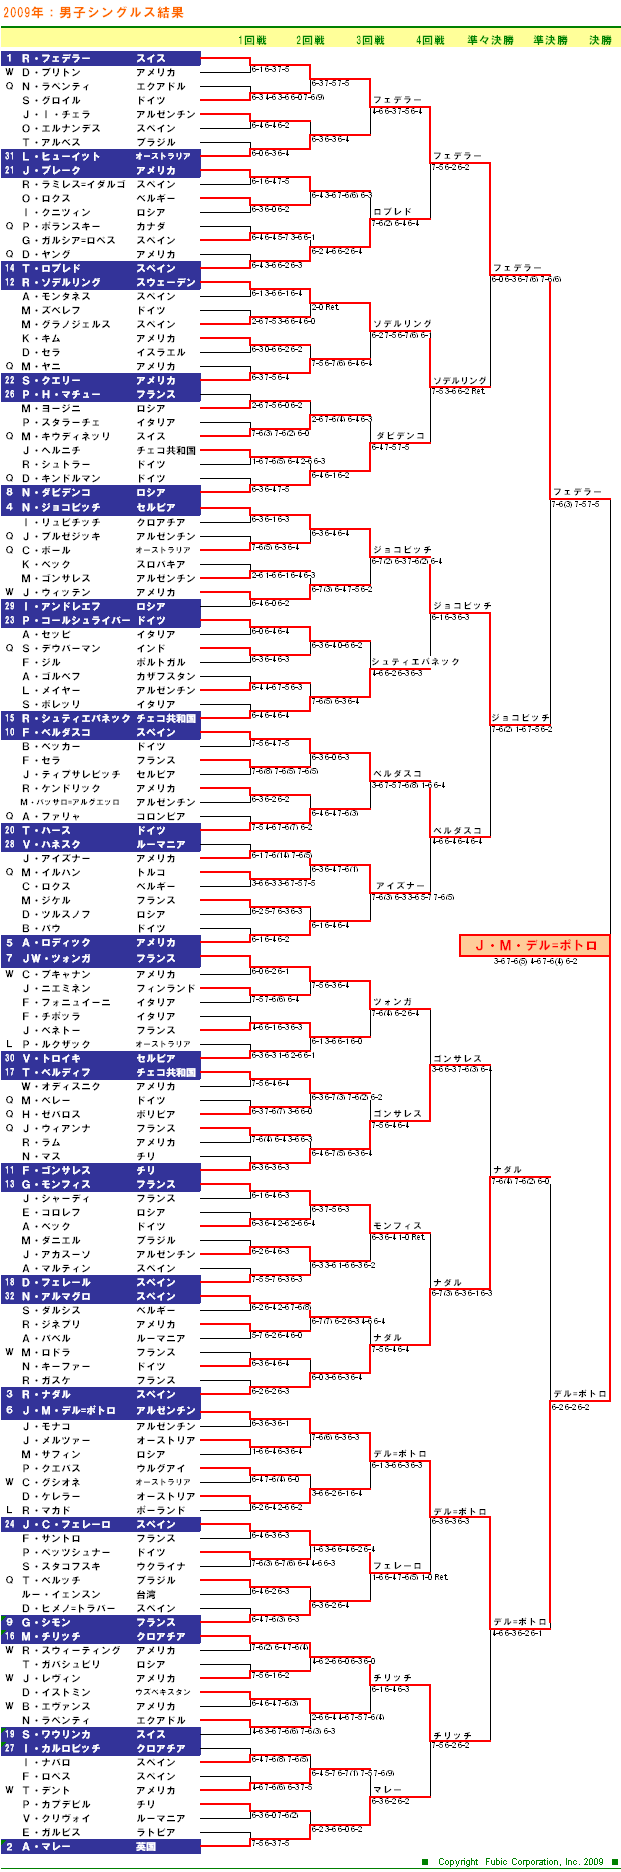 USオープンテニステニス2009　男子シングルスドロー表